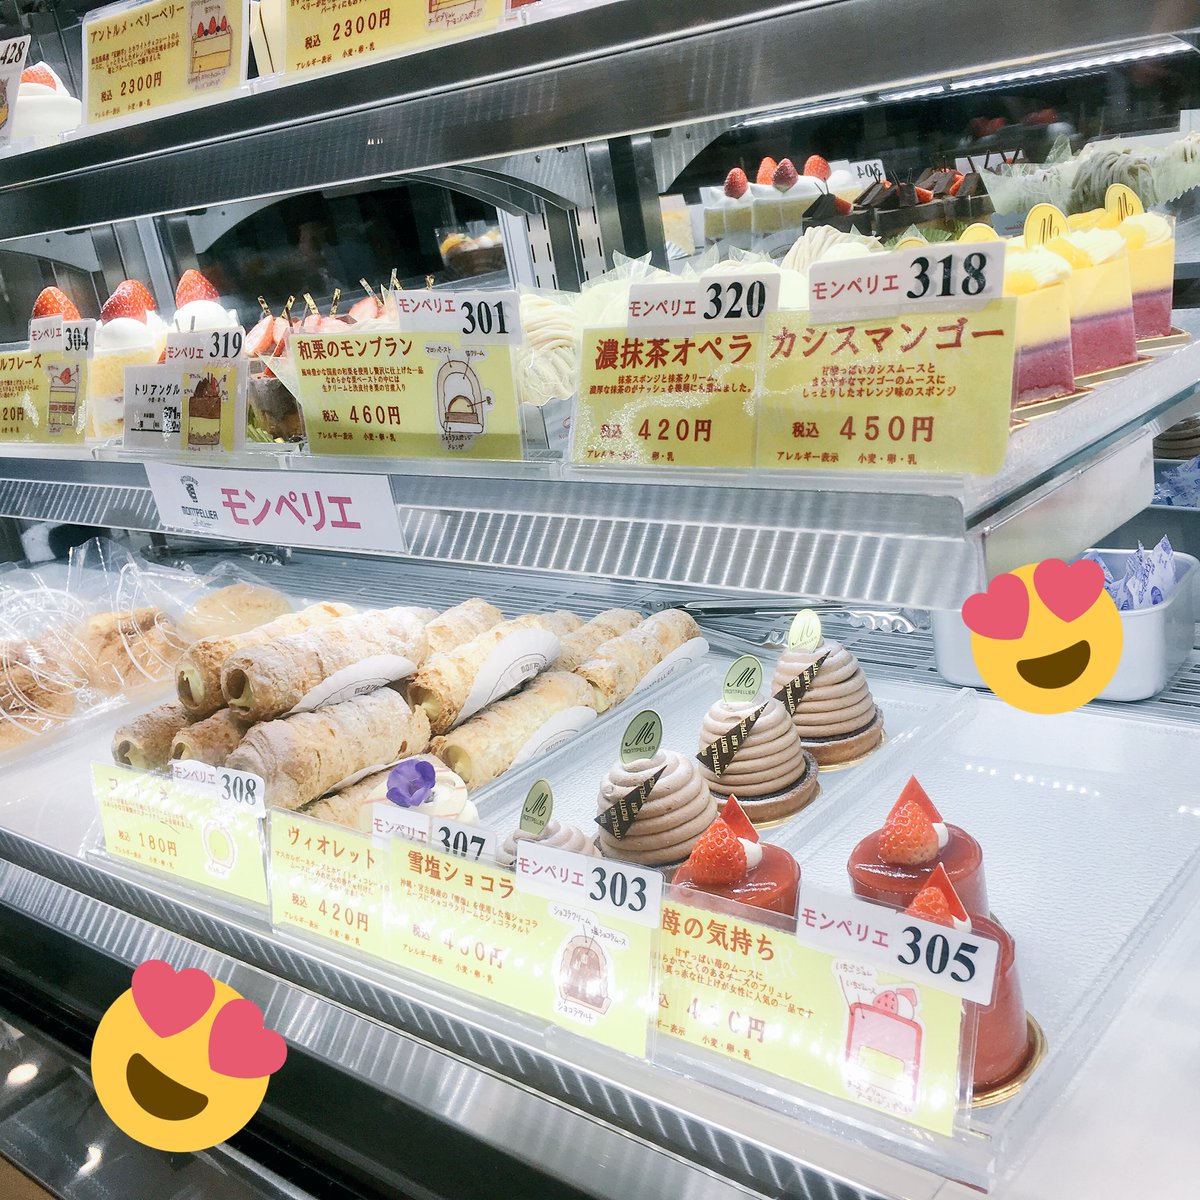 ハッピー製菓調理専門学校 公式 皆さんお休みはいかがお過ごしですか 千葉駅駅ナカが改装され はや 一週間です ハッピースイーツ製菓専門学校の講師の先生方が作り出すケーキはコチラ 改札を入って左の Artisan In Chiba にありますよ